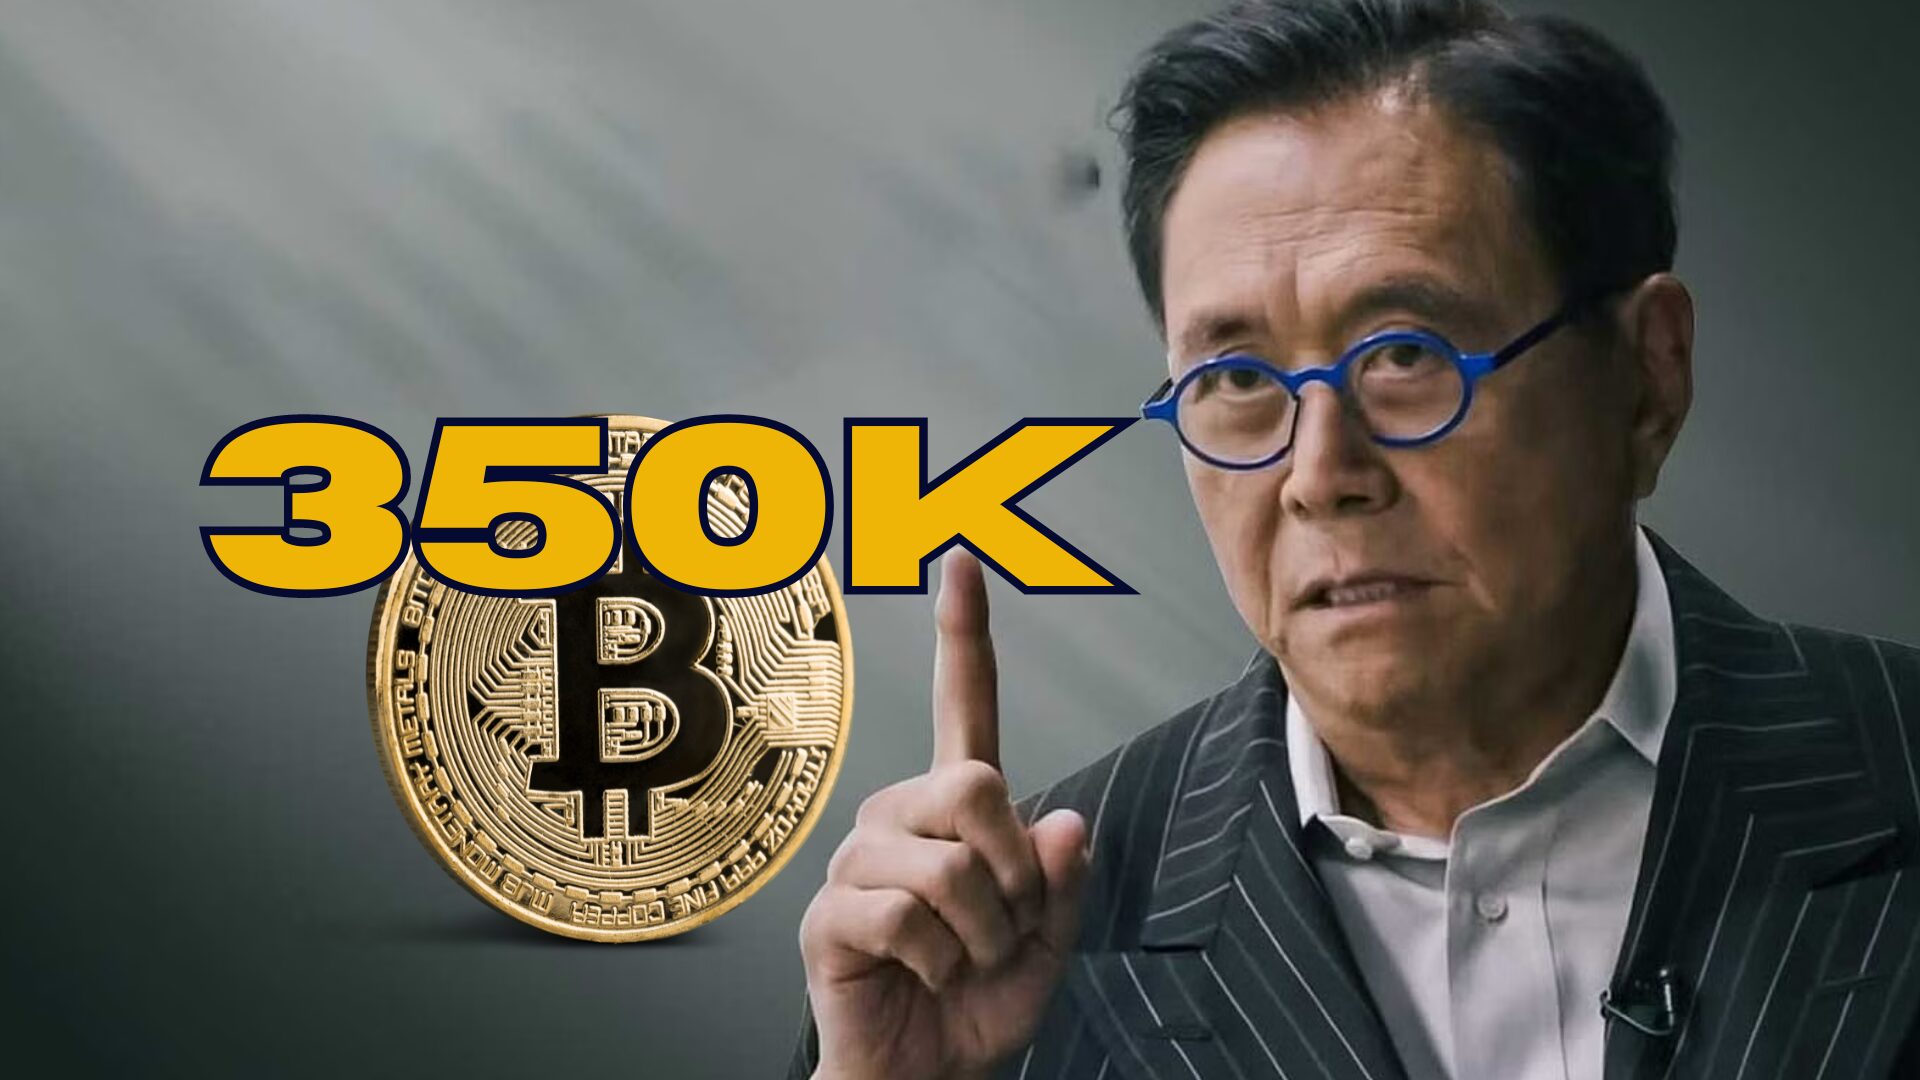 Robert Kiyosaki prevê que o Bitcoin suba para $350K